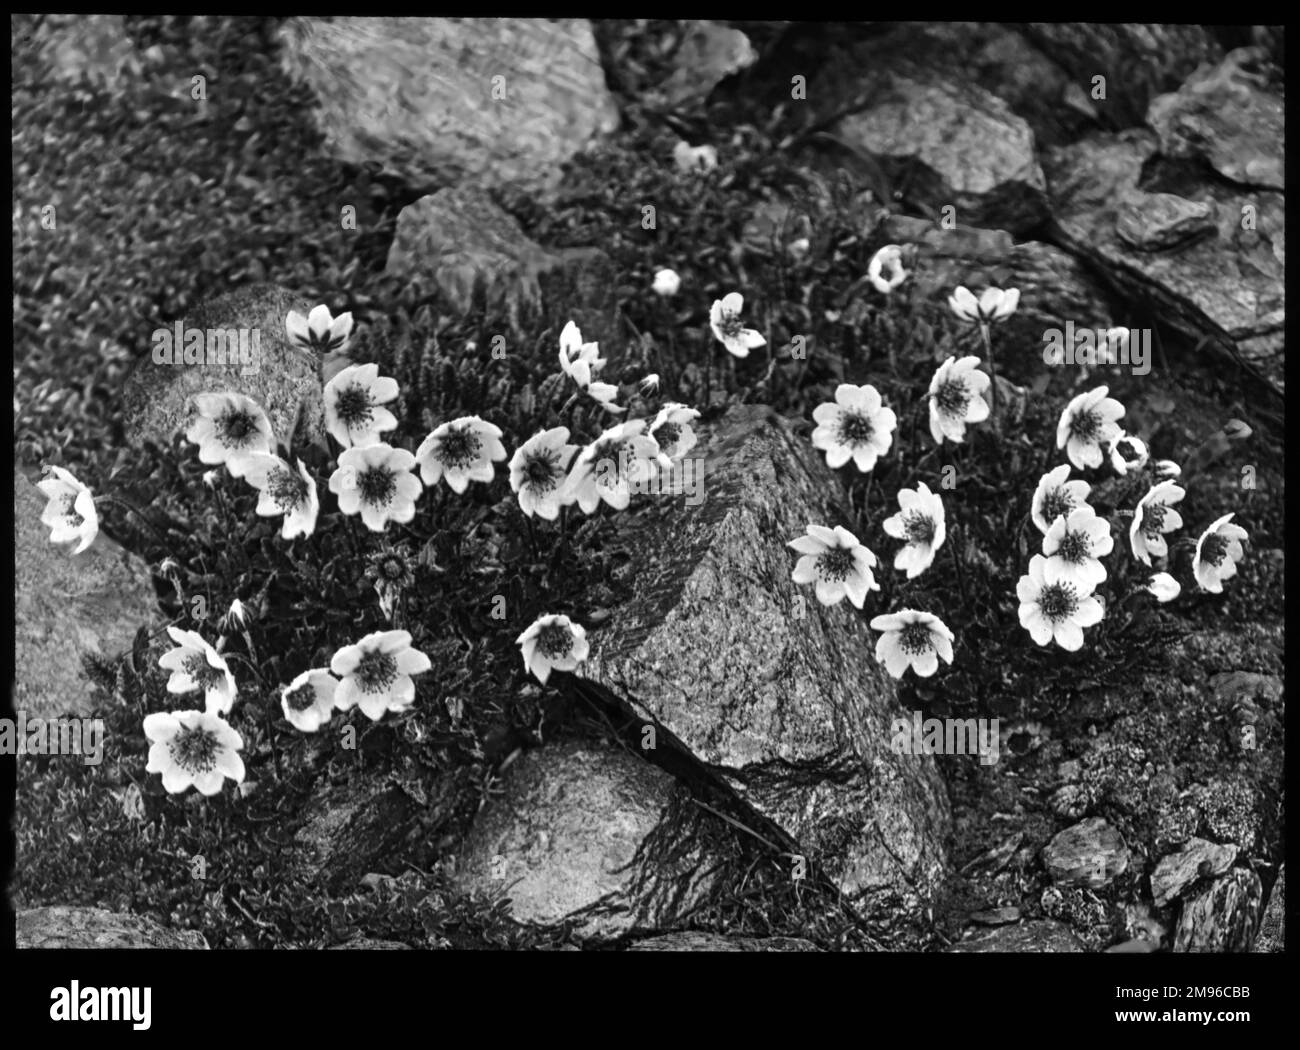 Dryas octopetala (Mountain Avens, White Dryas, White Dryad), eine arktisch-alpine Blütenpflanze der Familie Rosaceae mit cremigen Blütenblättern. Hier wachsen sie in einer felsigen Umgebung. Der Name Octopetala bezieht sich auf das Vorhandensein von acht Blütenblättern, eine ungewöhnliche Zahl in den Rosaceae. Stockfoto